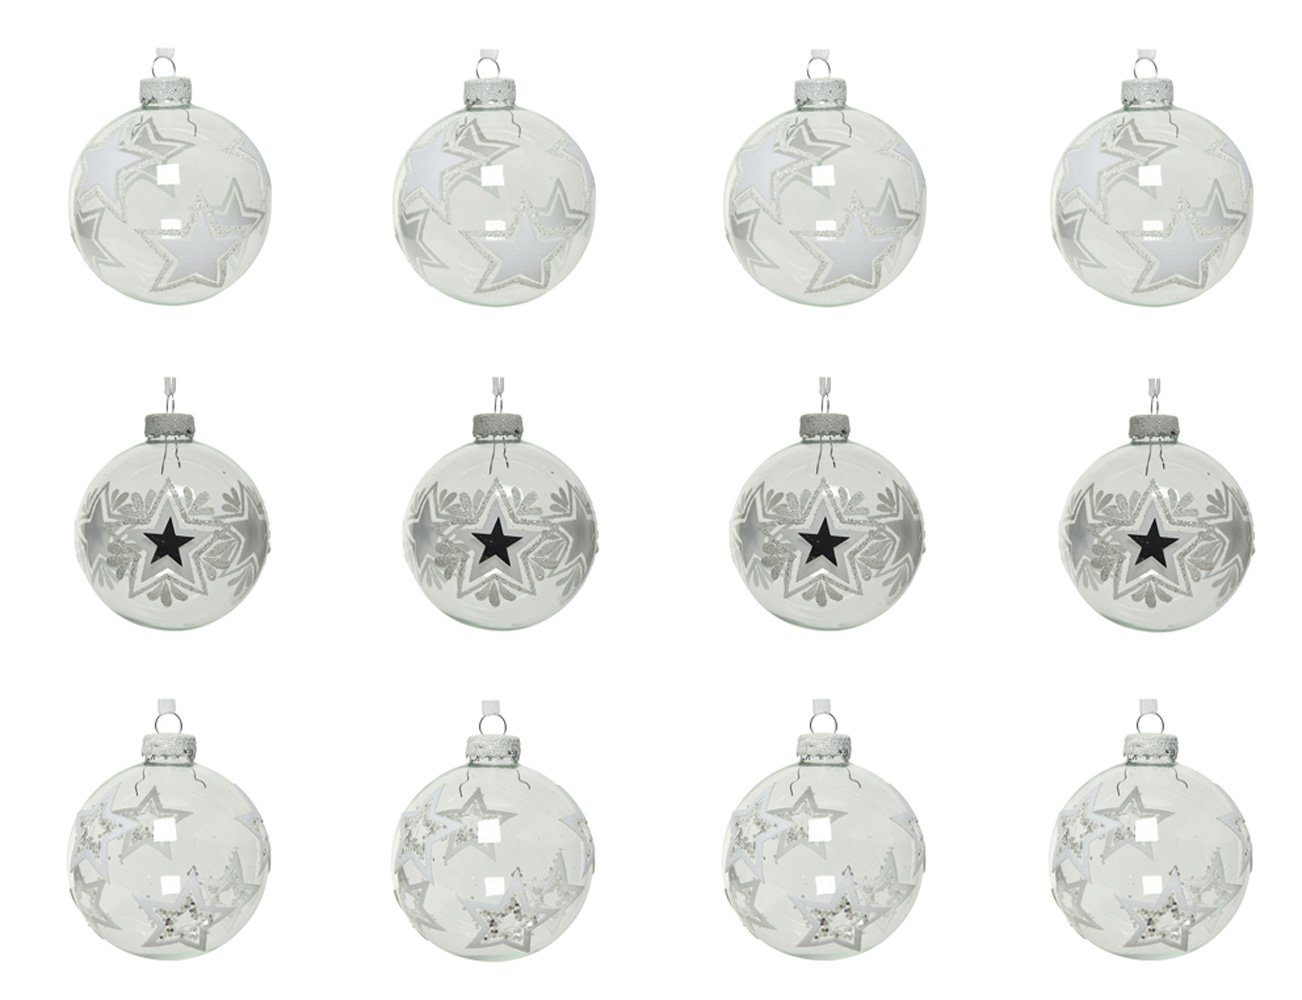 Decoris season decorations transparent, Motiv 8cm Weihnachtsbaumkugel, Sterne Weihnachtskugeln 12er klar Glas Set